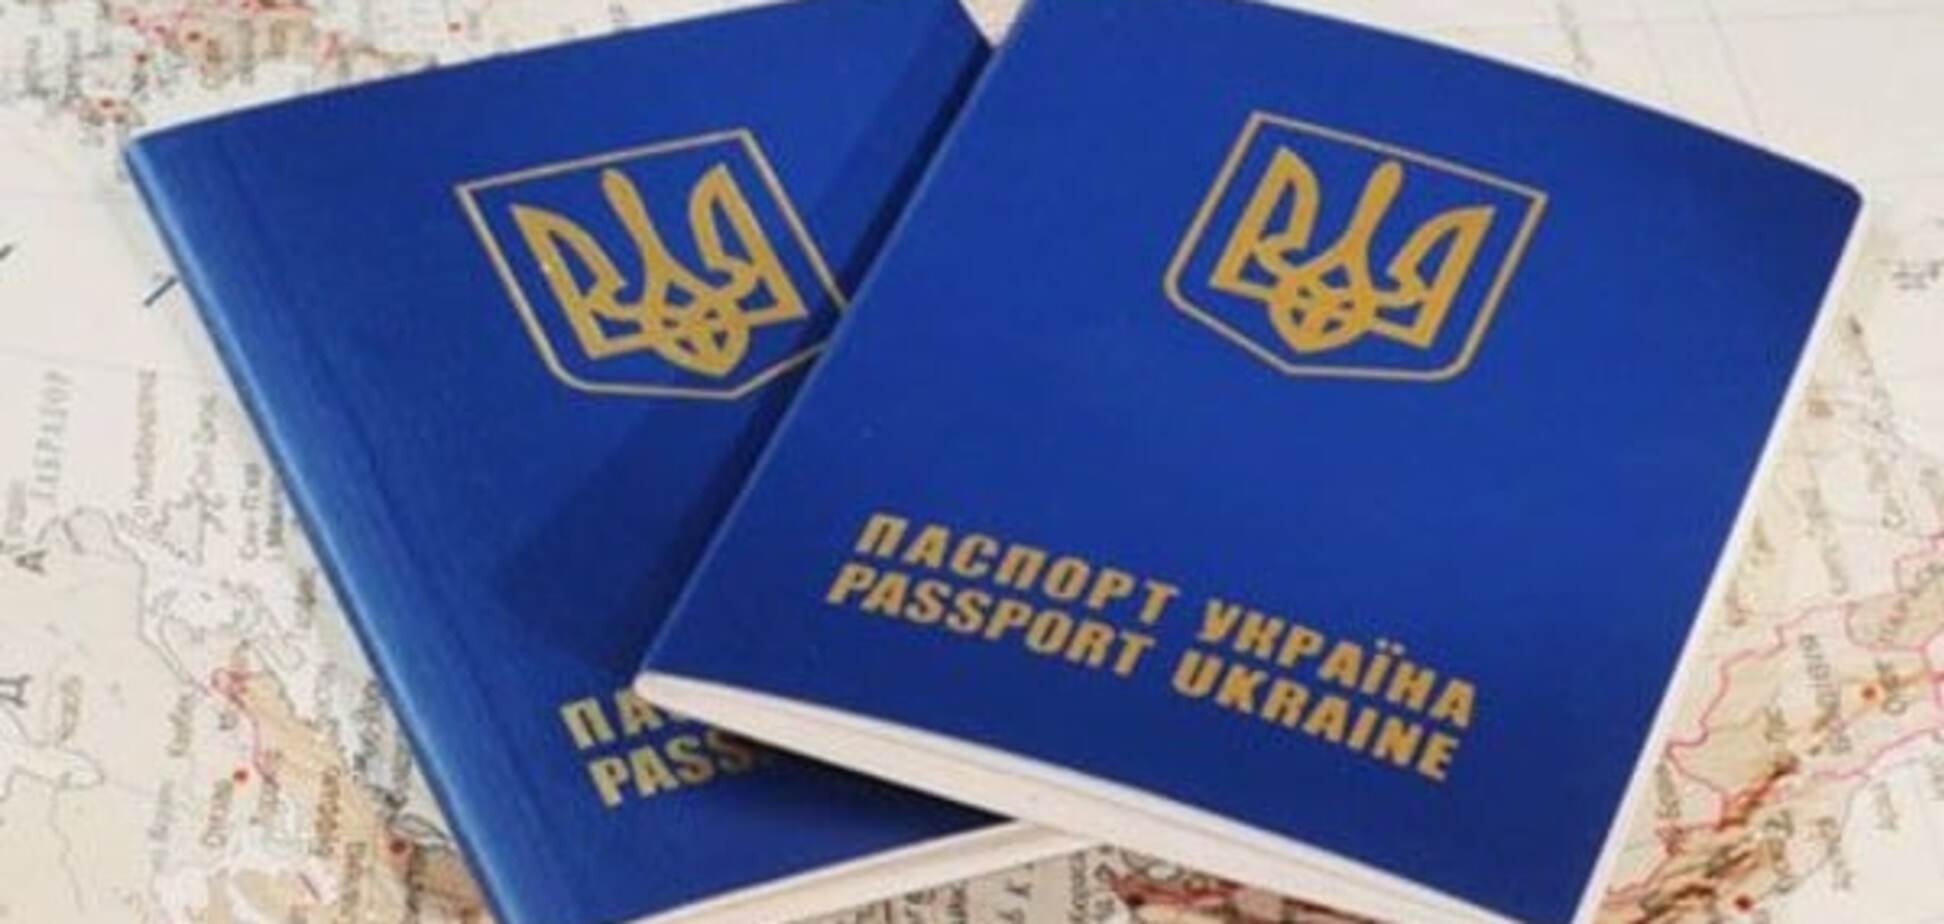 Для крымчан с российскими паспортами Европа закрыта - МИД